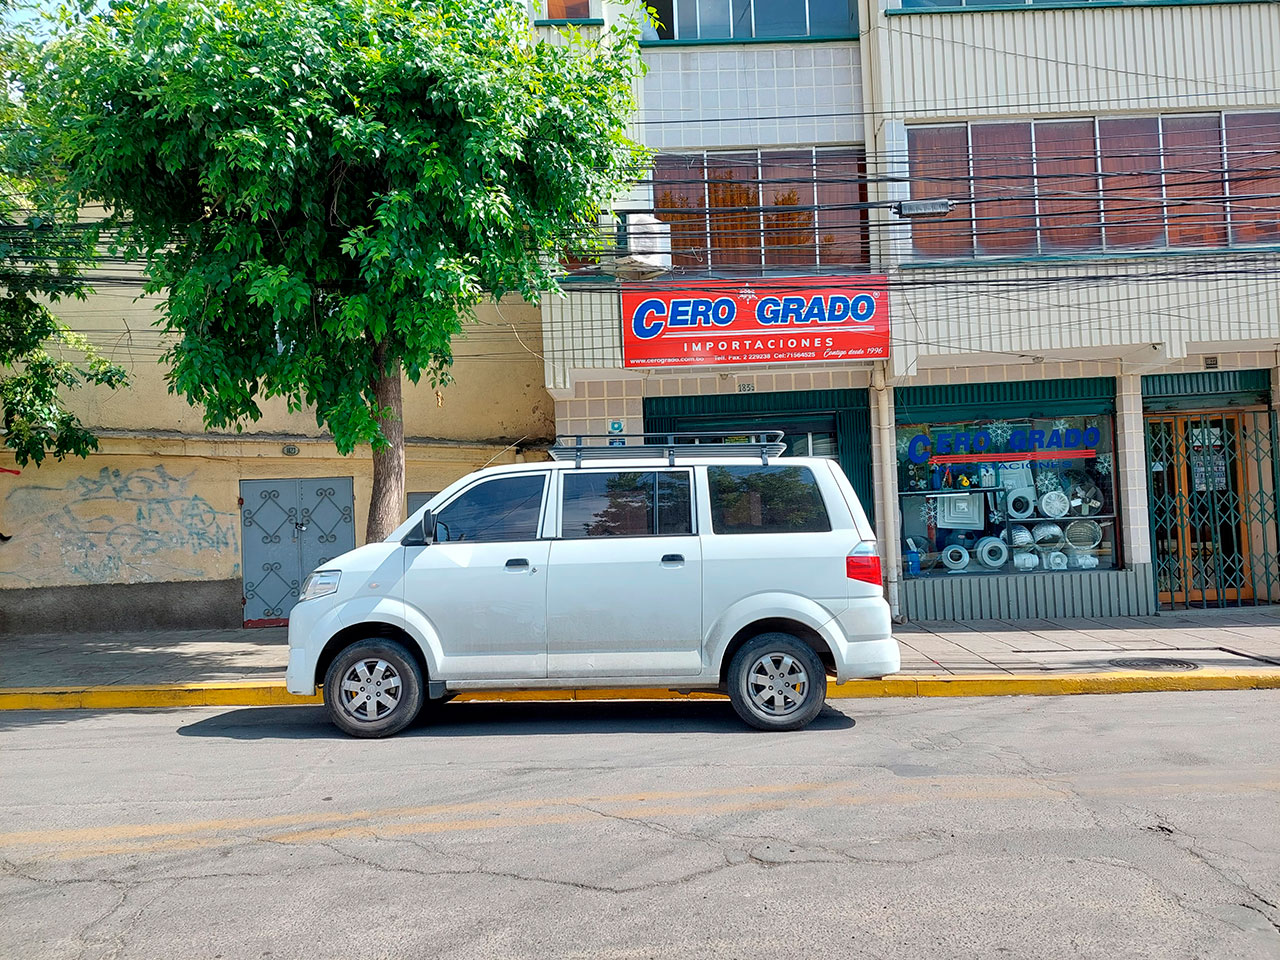 Oficina La Paz Cero Grado - Vehículo Carri